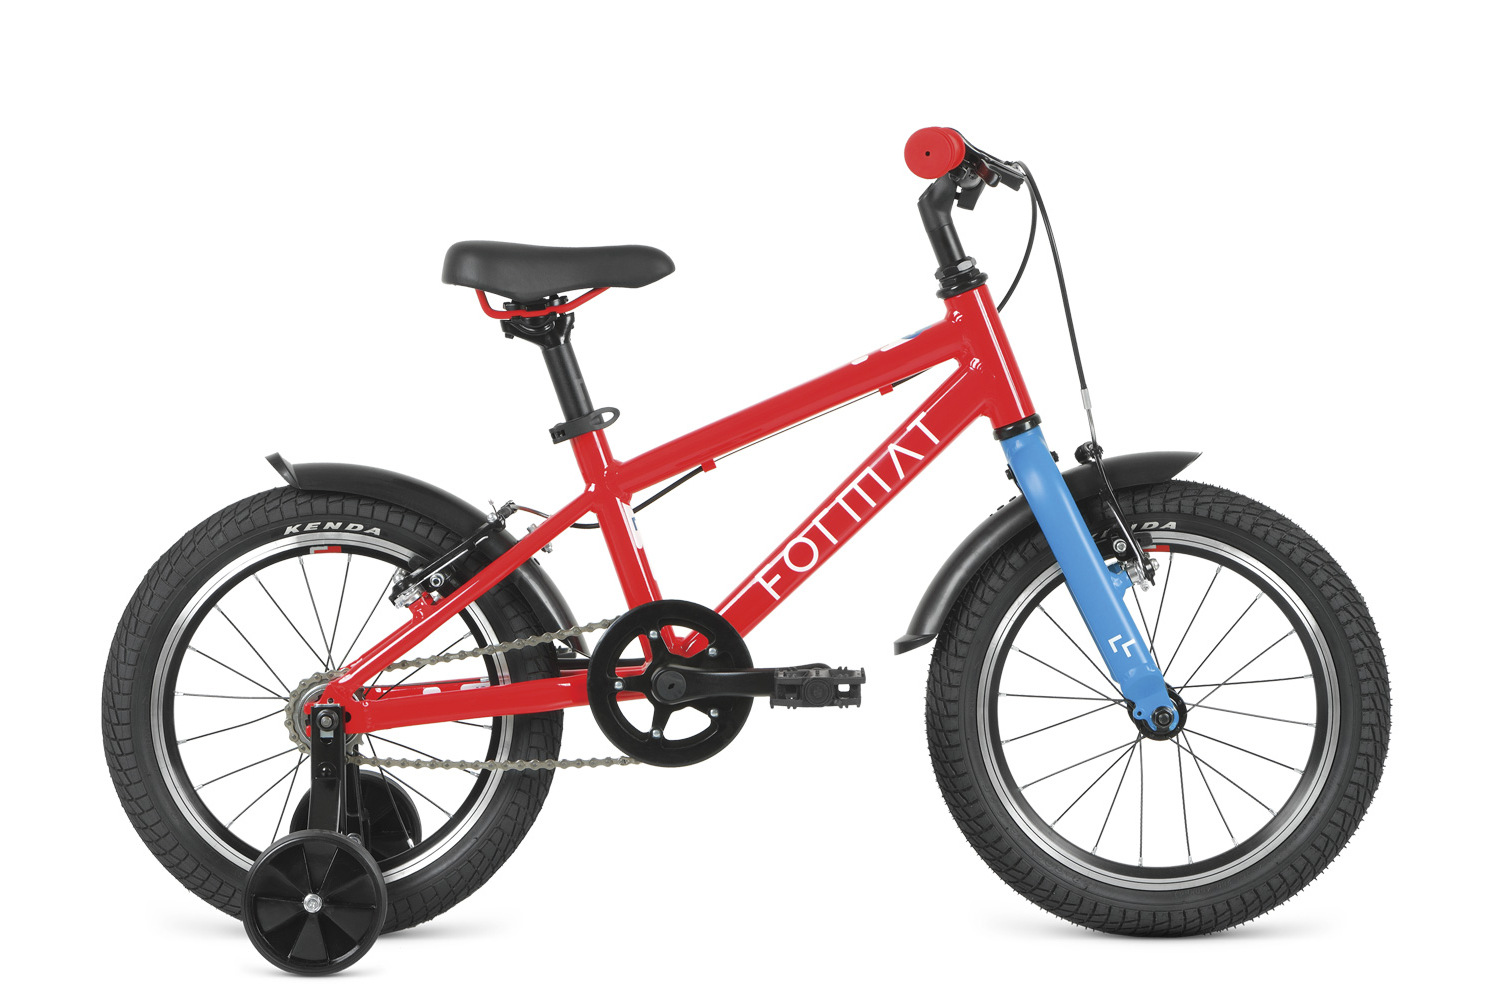 Детский велосипед Format Kids 16, год 2022, цвет Красный